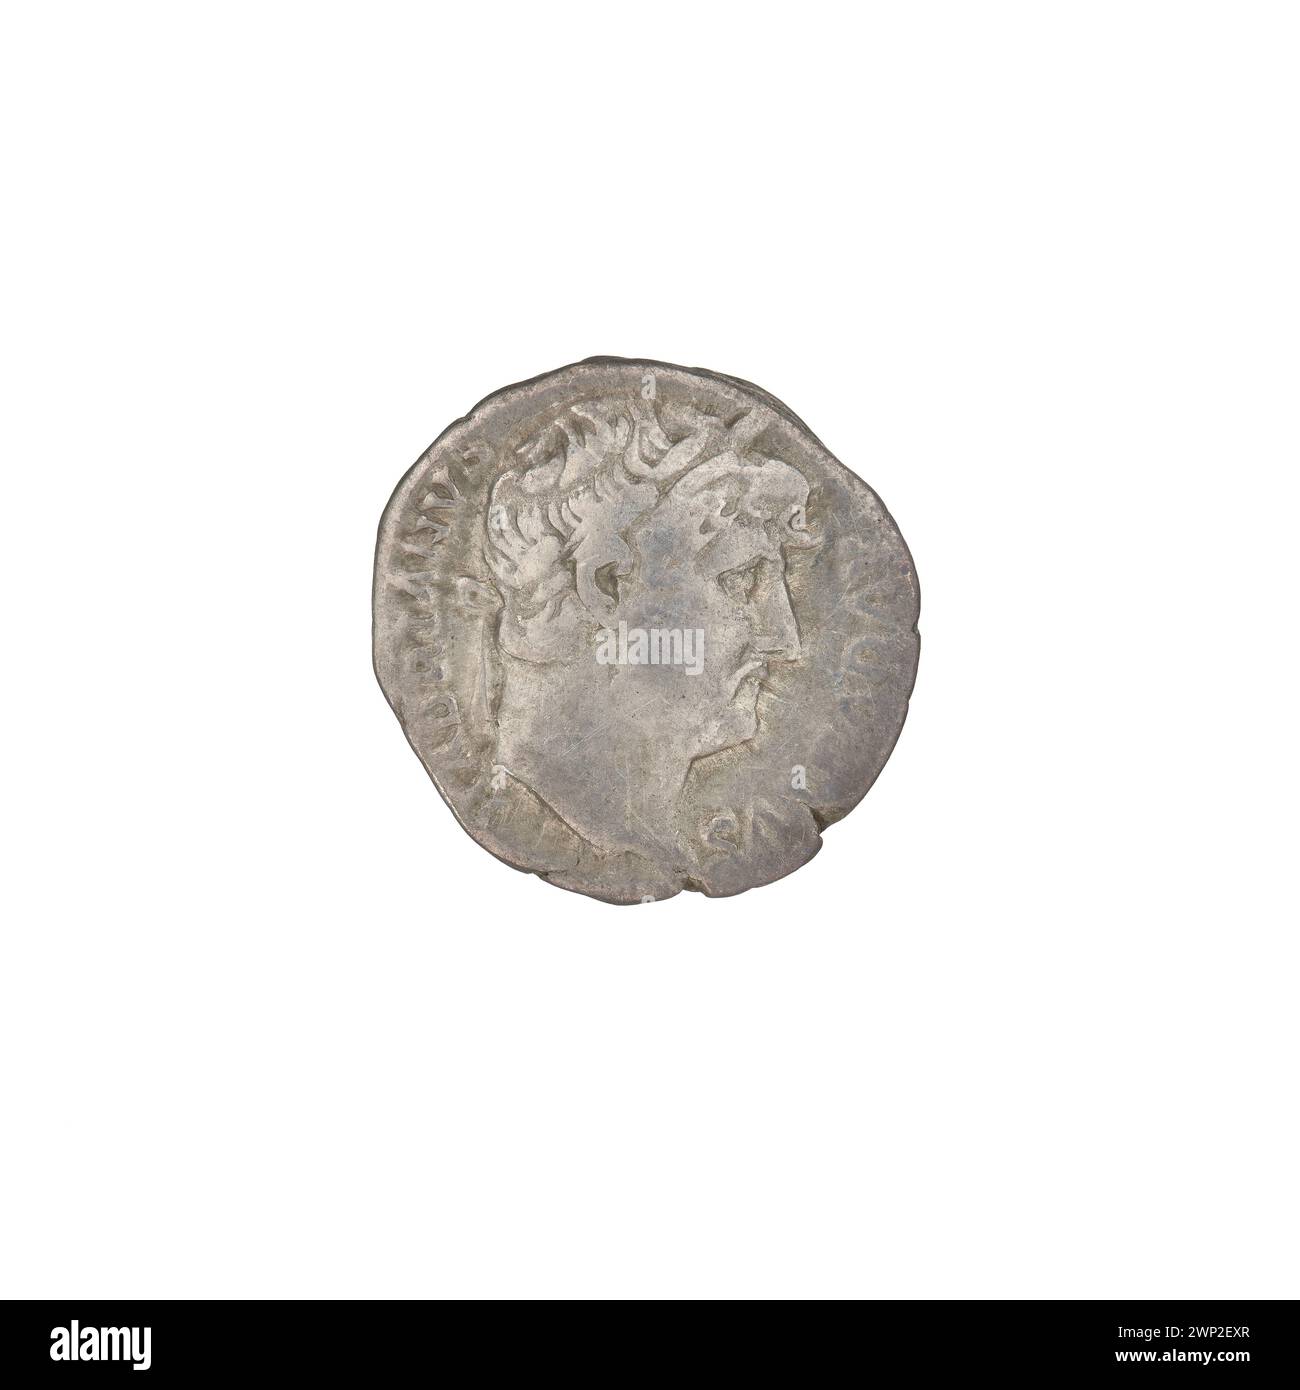 denarius; Hadrian (76-138; Roman emperor 117-138); 125-128 (114-00-00-117-00-00);Pudicitia (personification), heads, veils, laurel wreaths Stock Photo